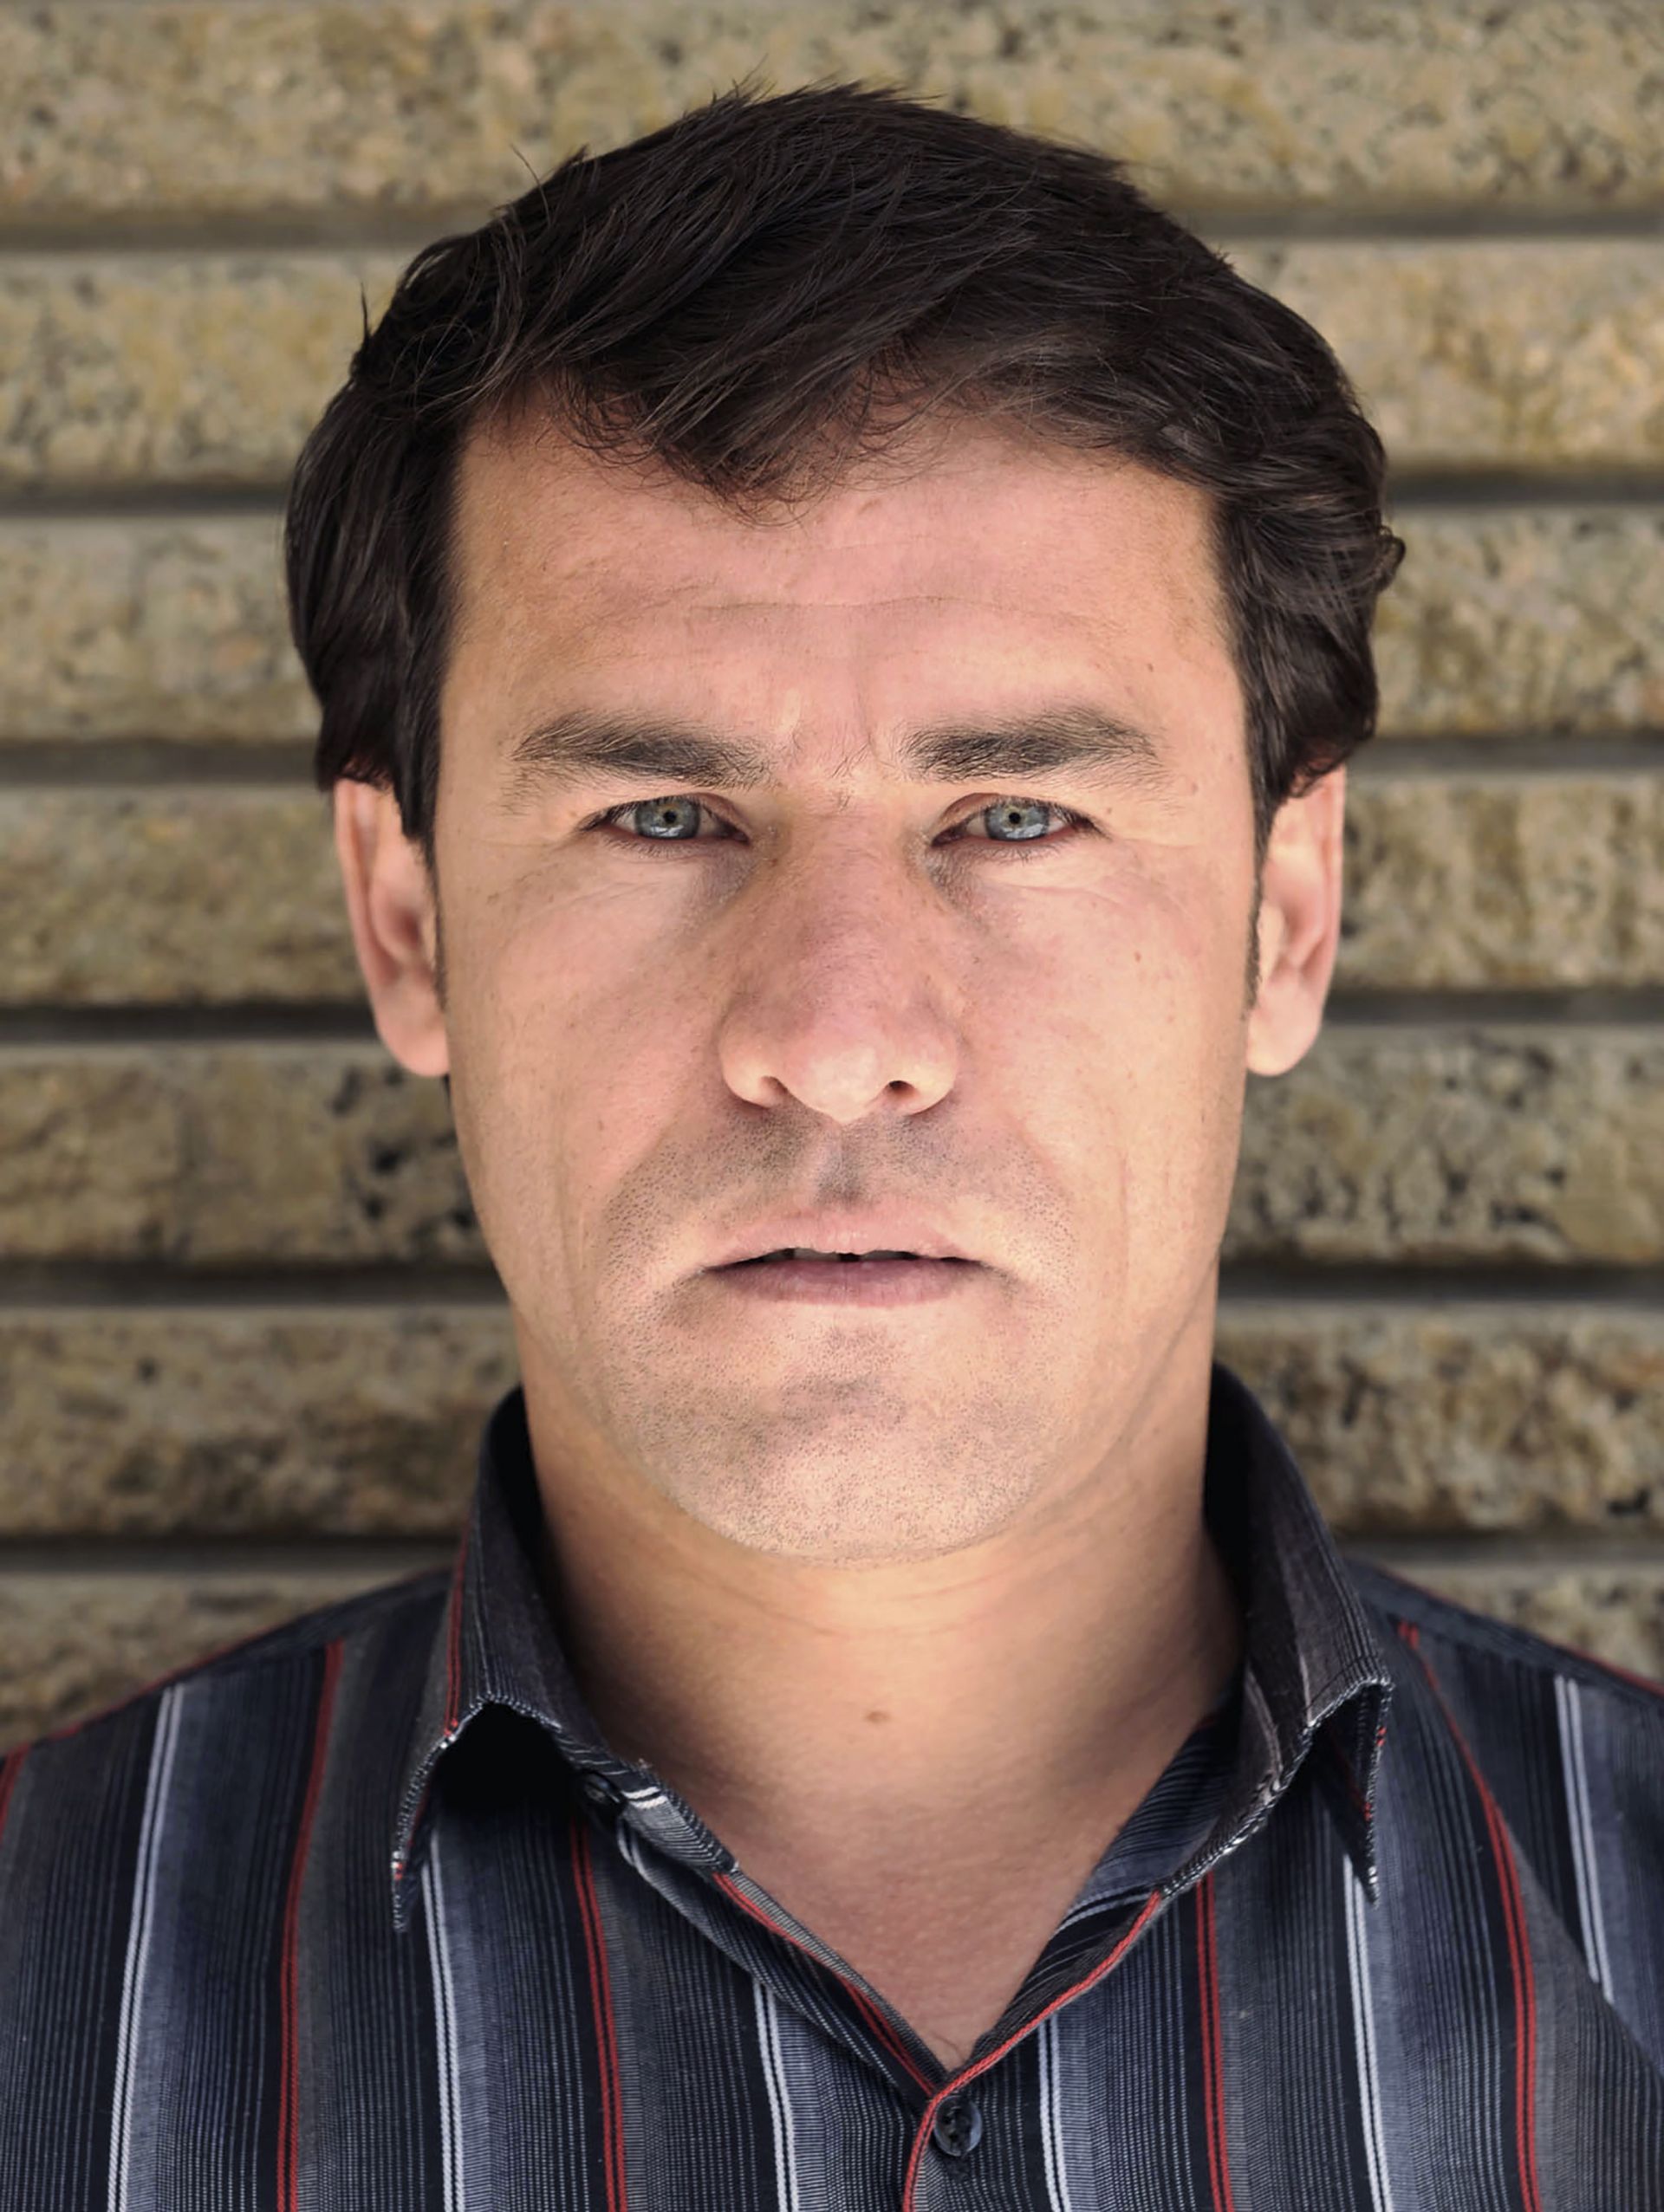  Главният фотограф на АФП в Кабул, Шах Марайй, беше убит в понеделник